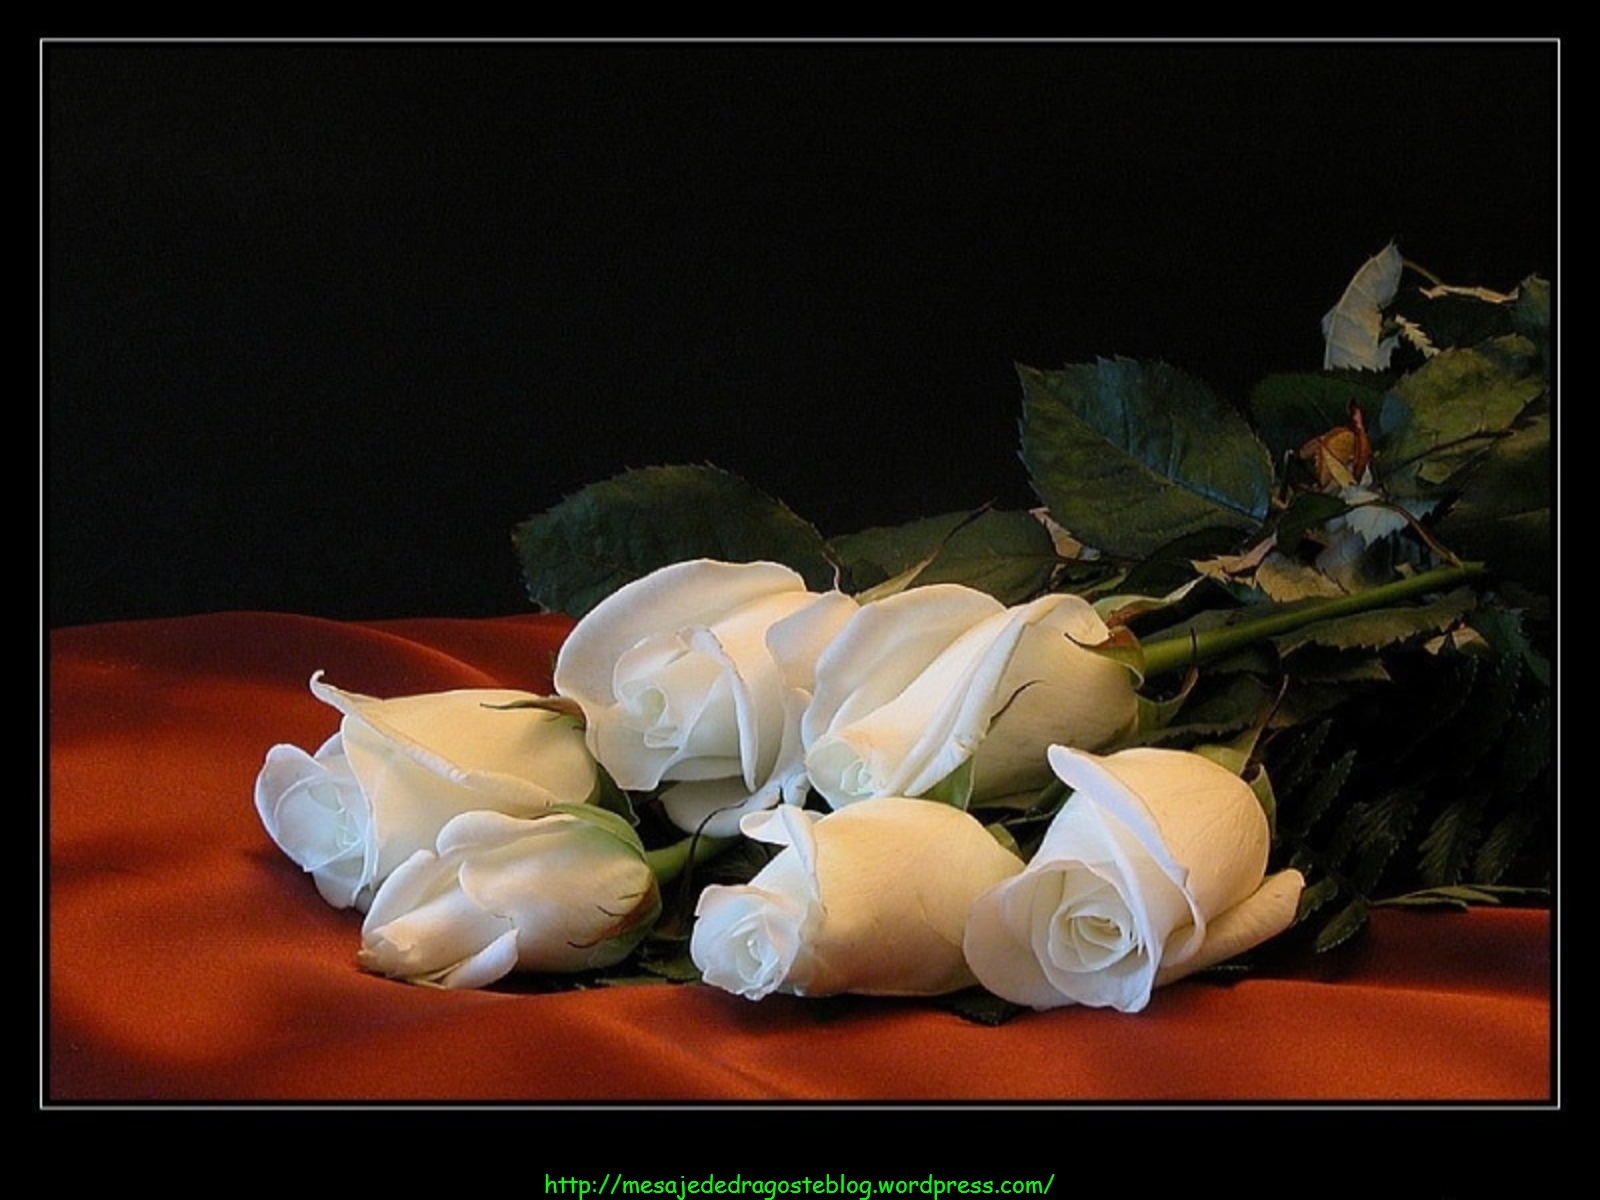 Розы спи любимая. Спокойной ночи с белыми розами. Добрый вечер с белыми розами. Романтичные цветы. Спокойной ночи девушке с белыми розами.